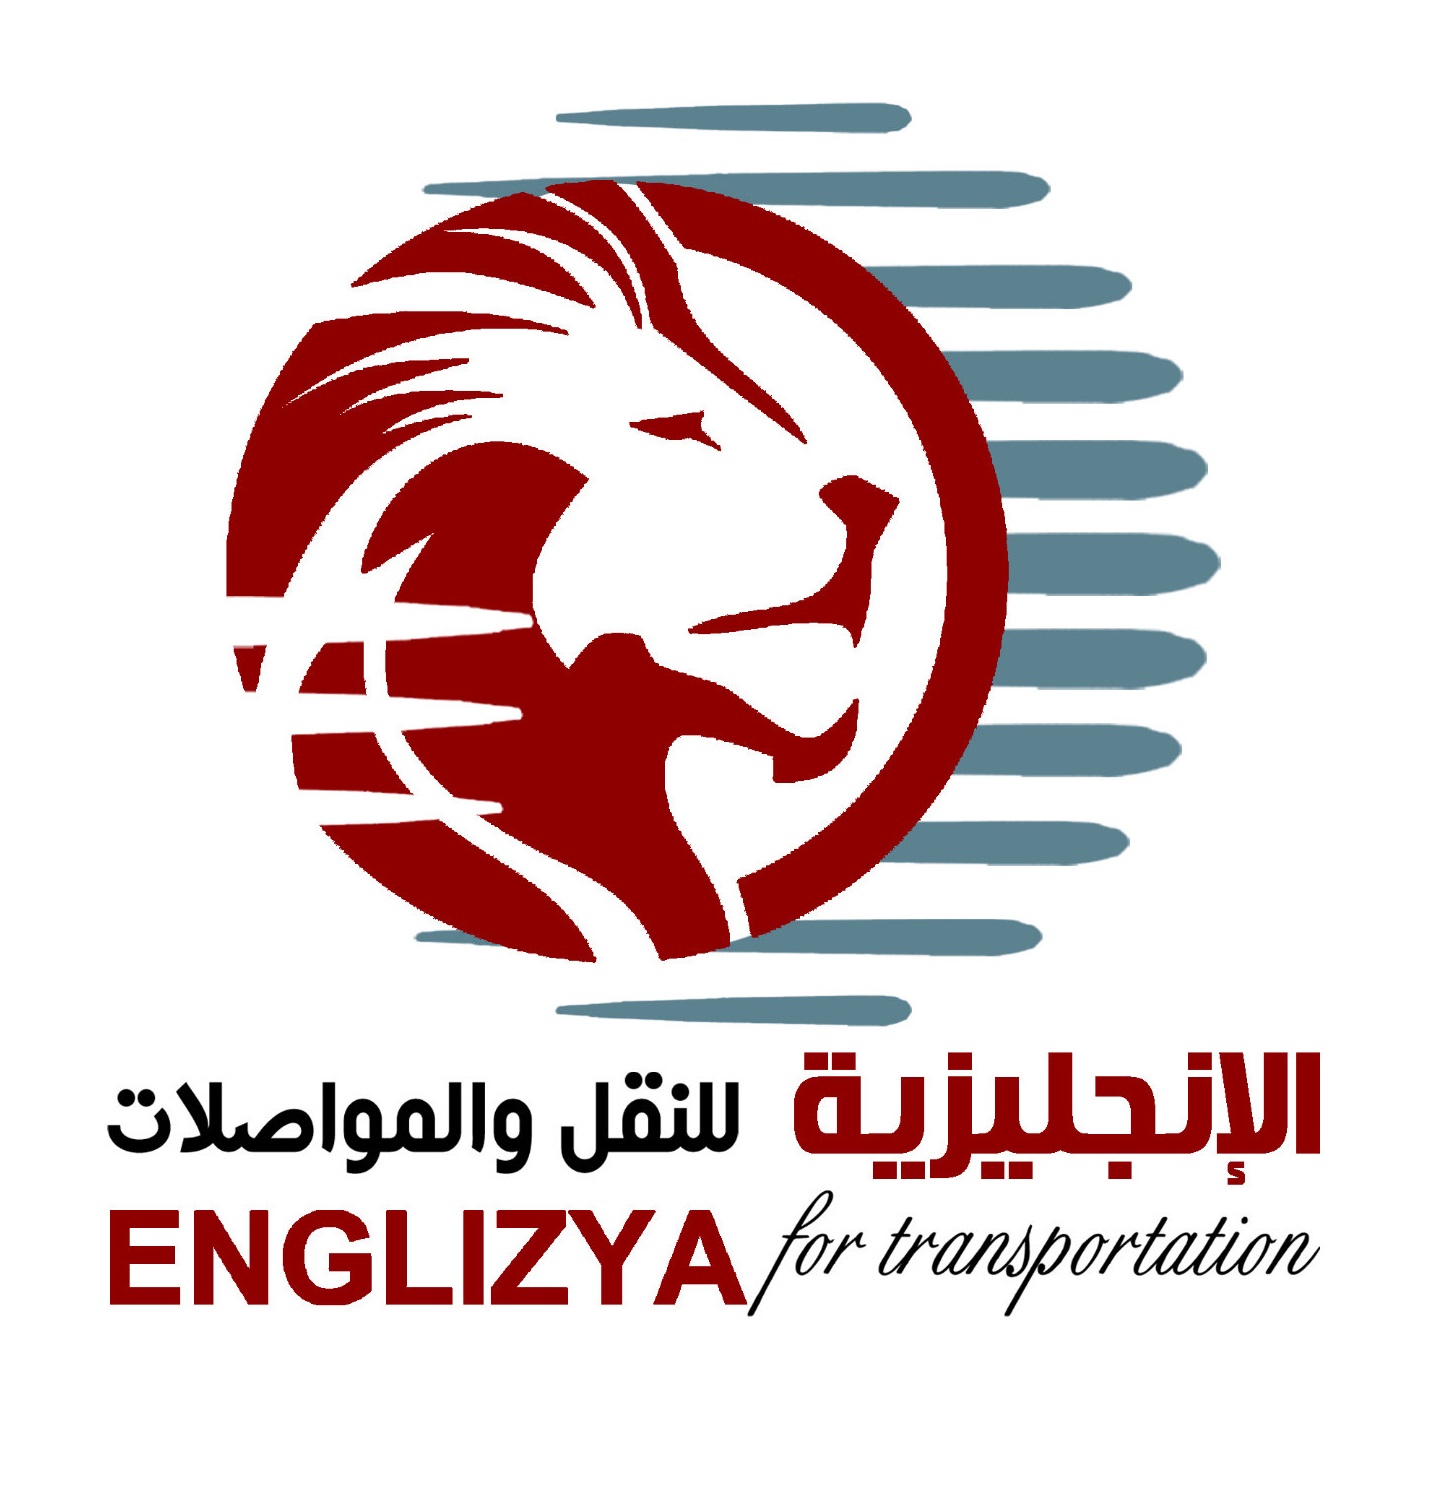 Englizya for transportation company